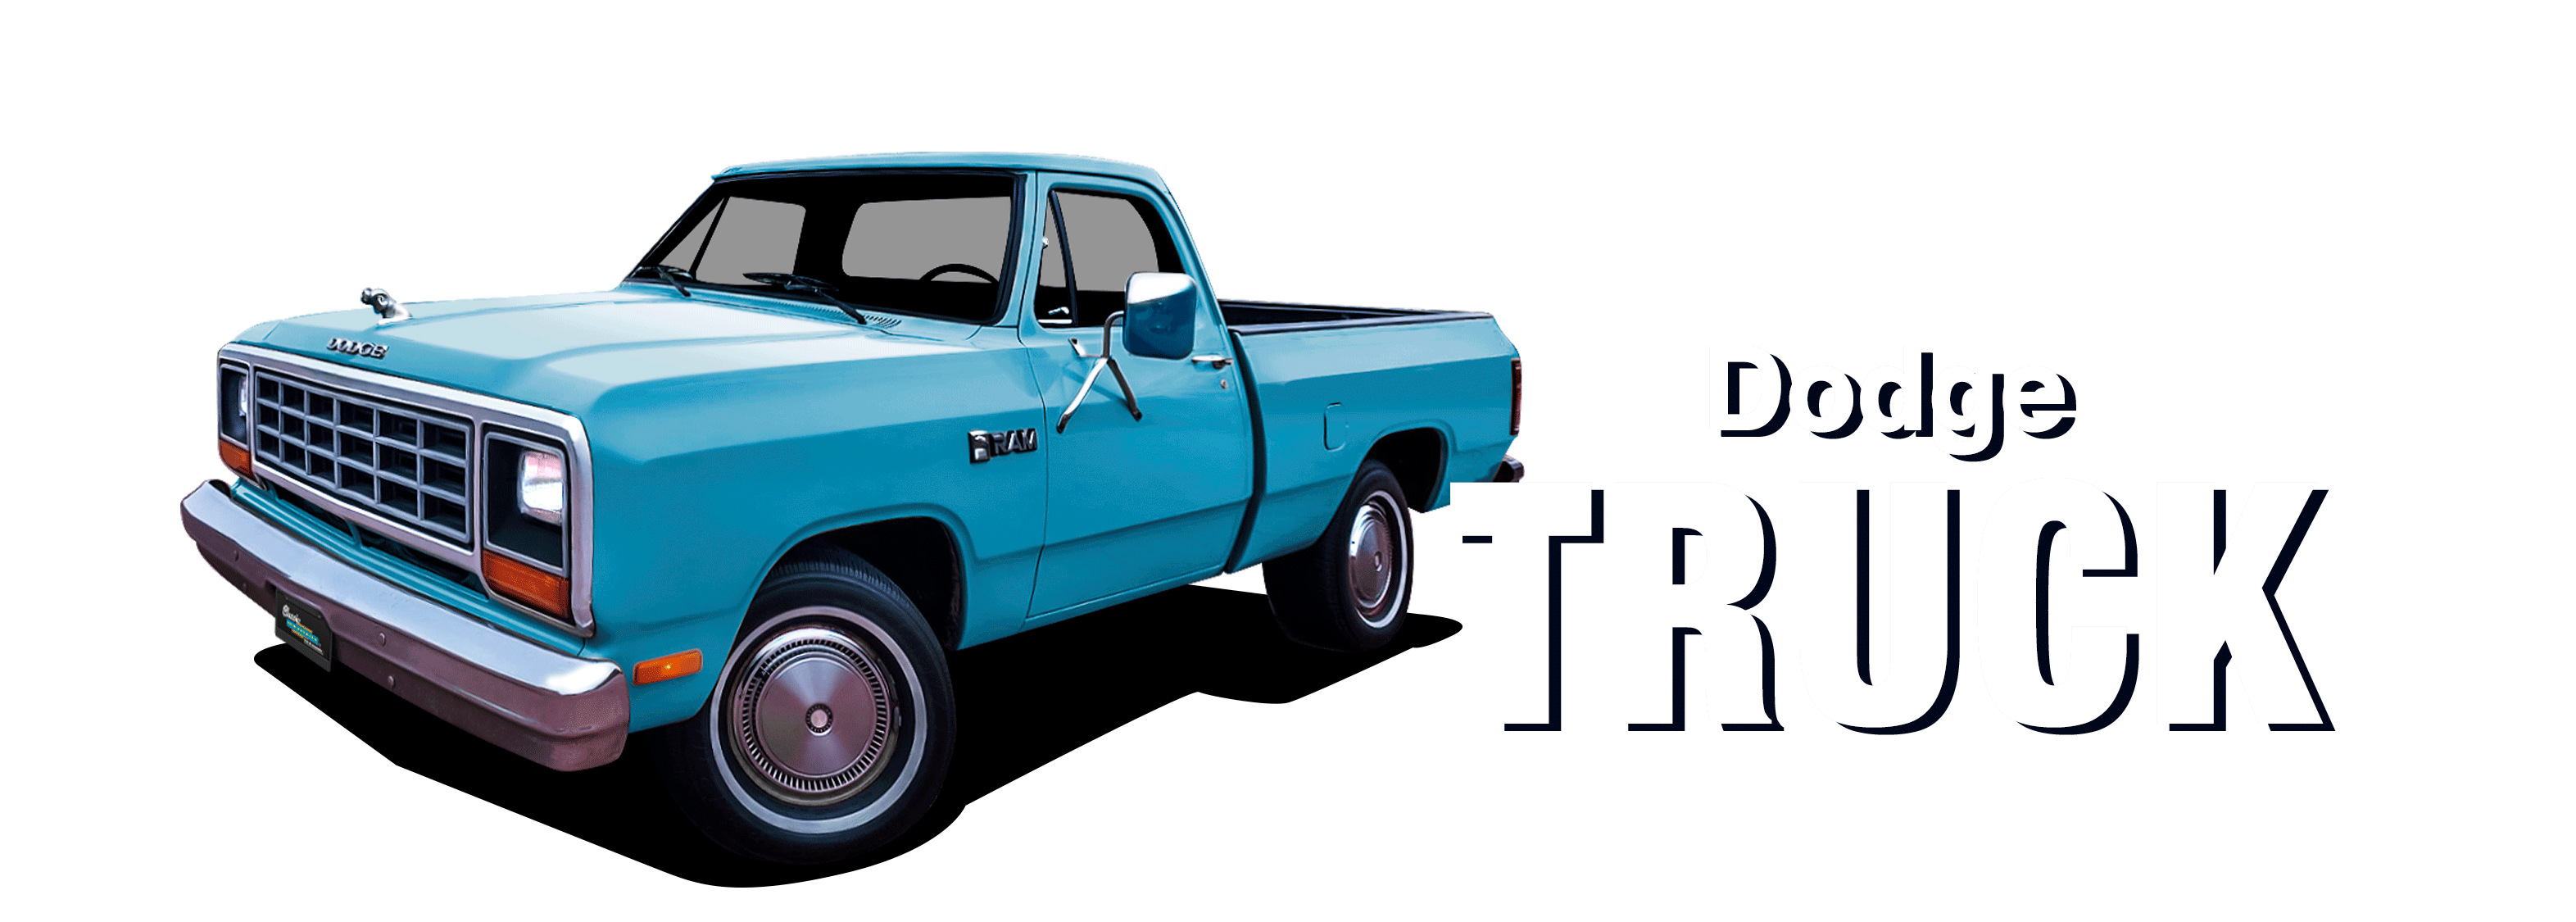 81-93Dodge-Truck-vehicle-desktop